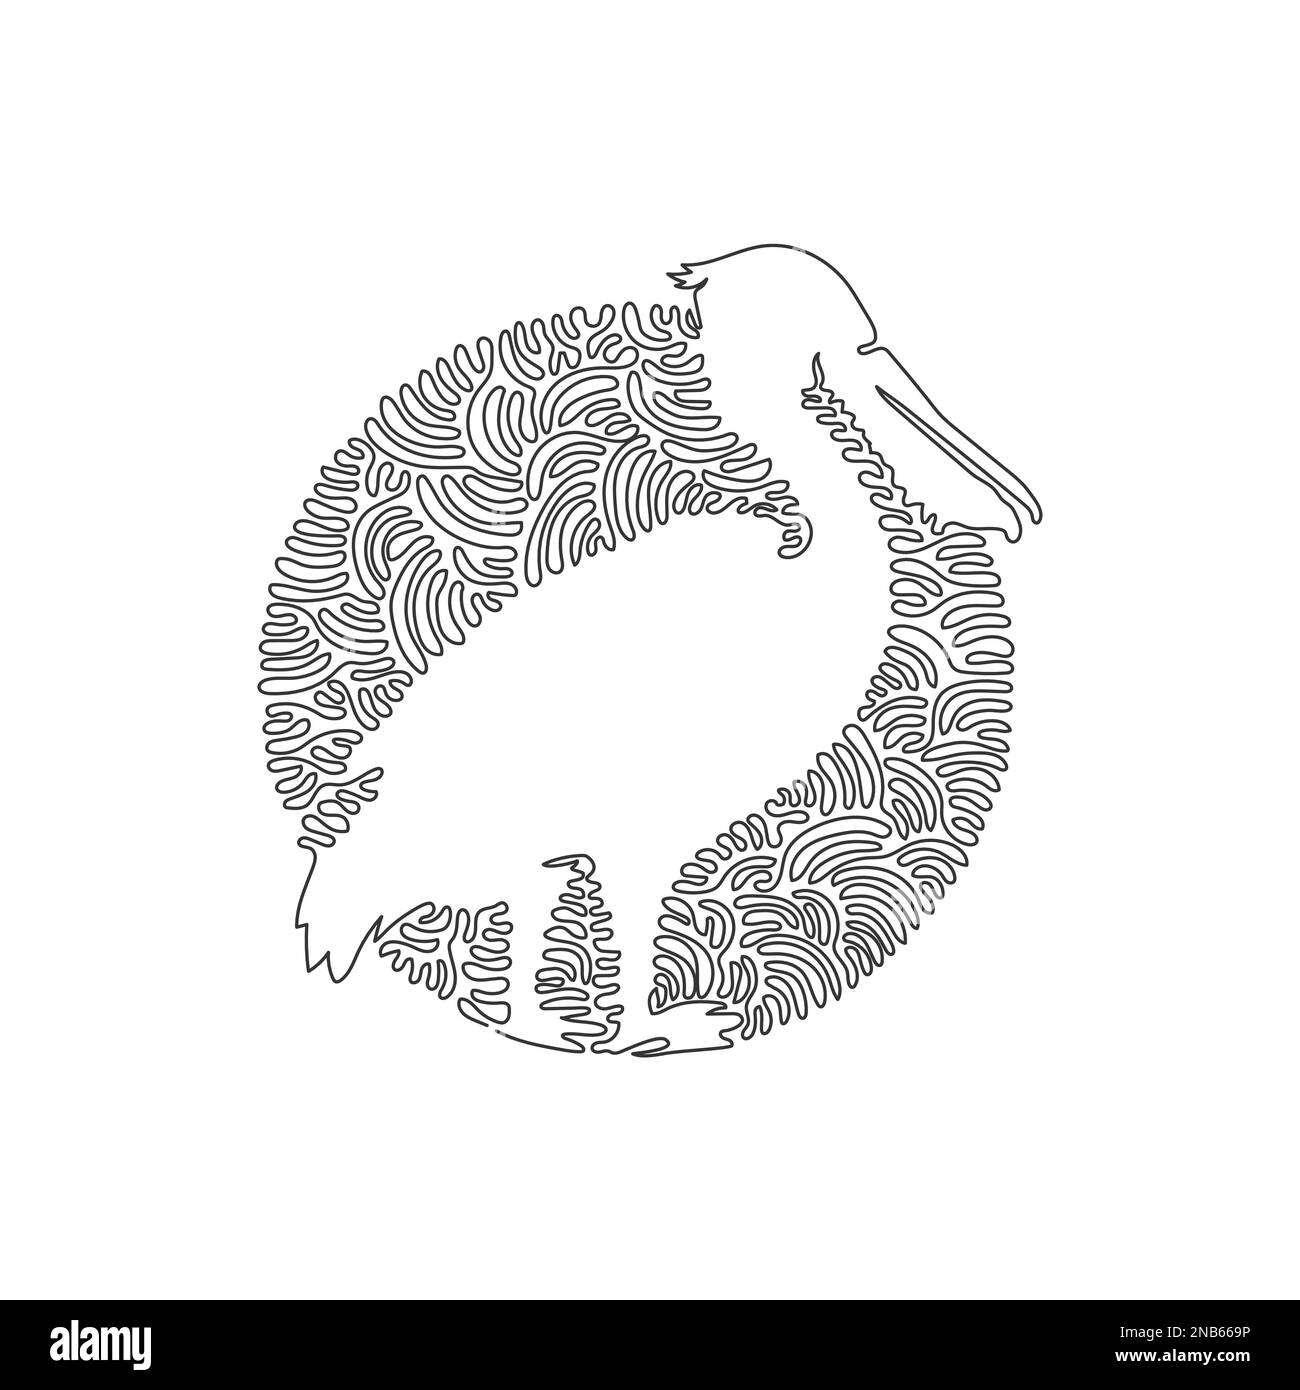 Durchgehende Kurve, eine Linienzeichnung eines niedlichen stehenden Pelikans. Einzeilige editierbare Schlaganfallvektordarstellung des süßen Pelikans Stock Vektor